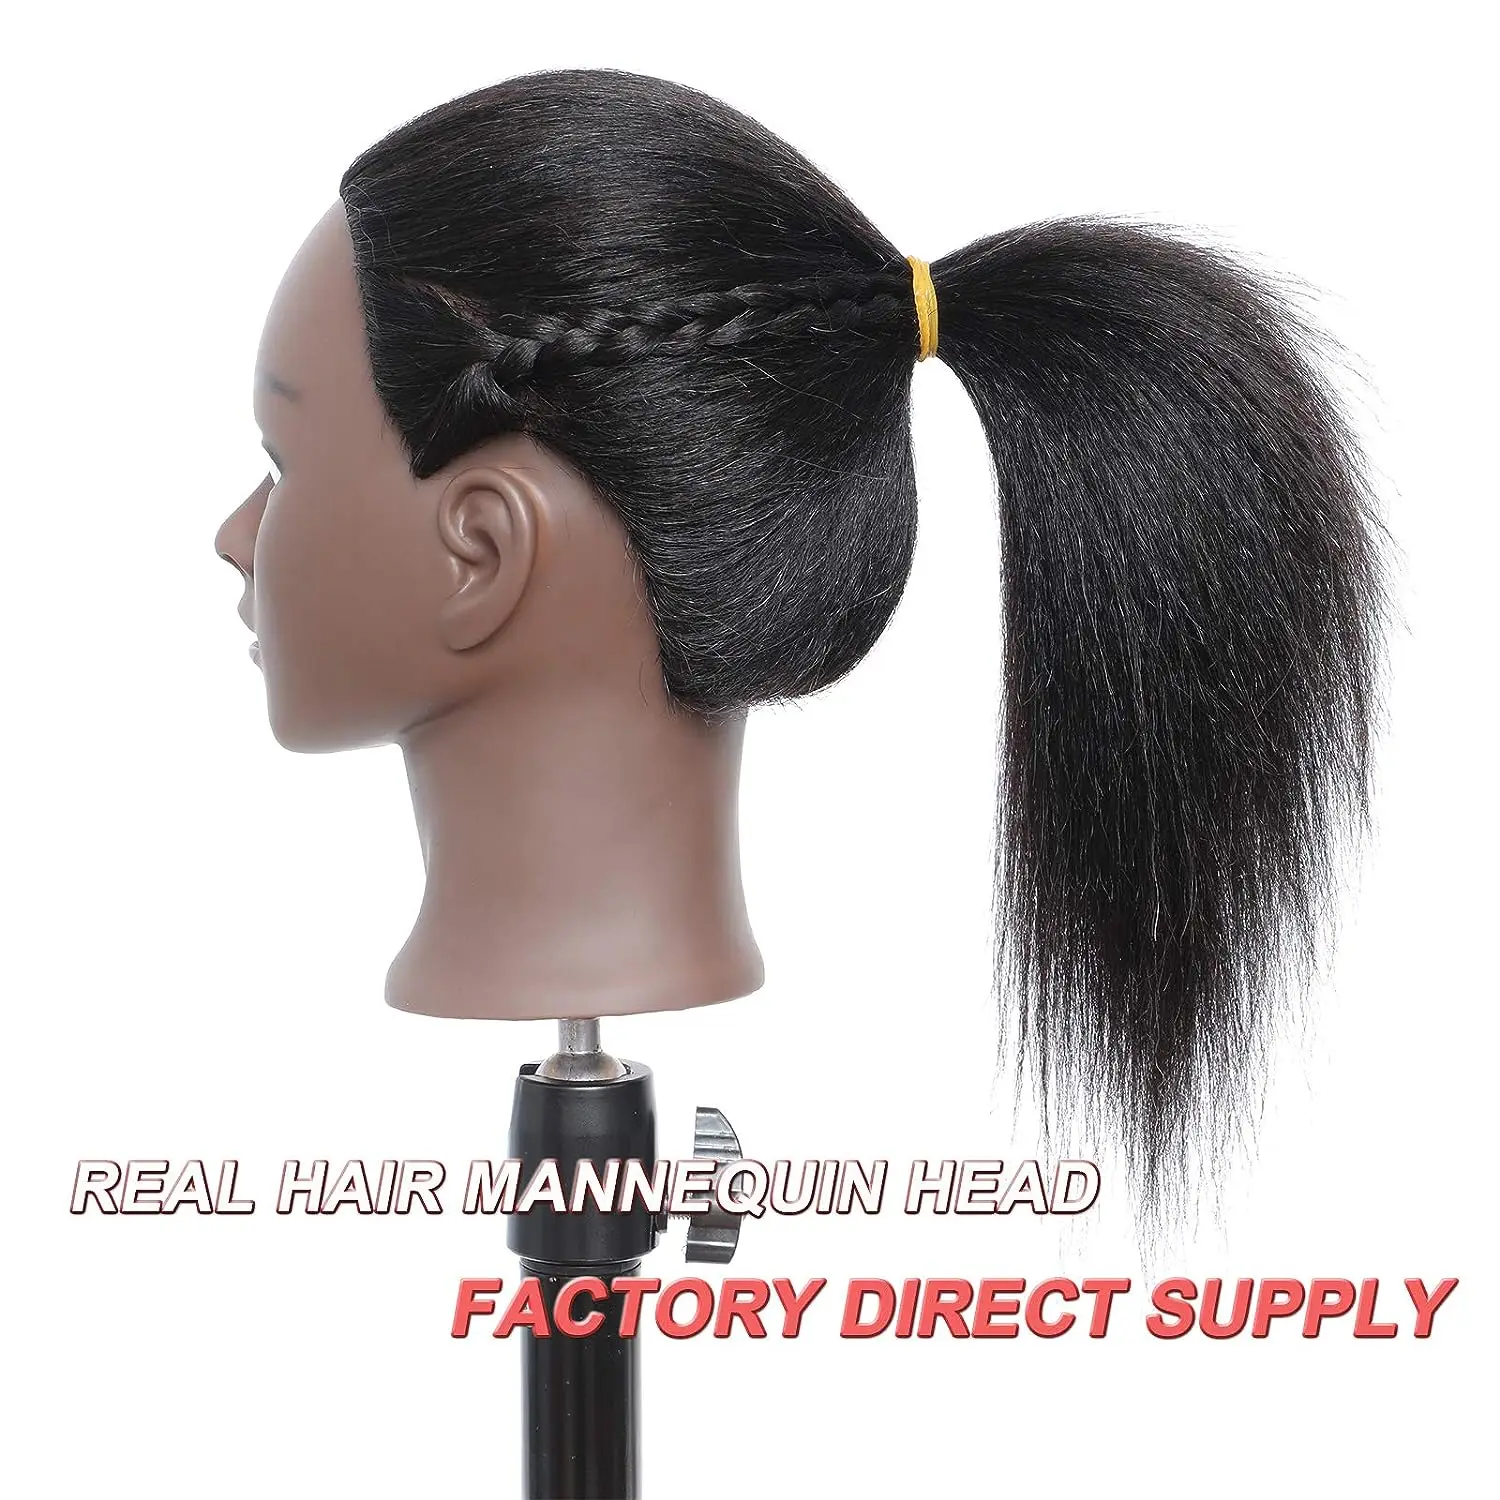 Главата на манекена със синтетична коса, тренировочная главата, косметологический манекен, стоп-моушън главата за фризьорски салон практики, ширити, стайлинг на коса - 3